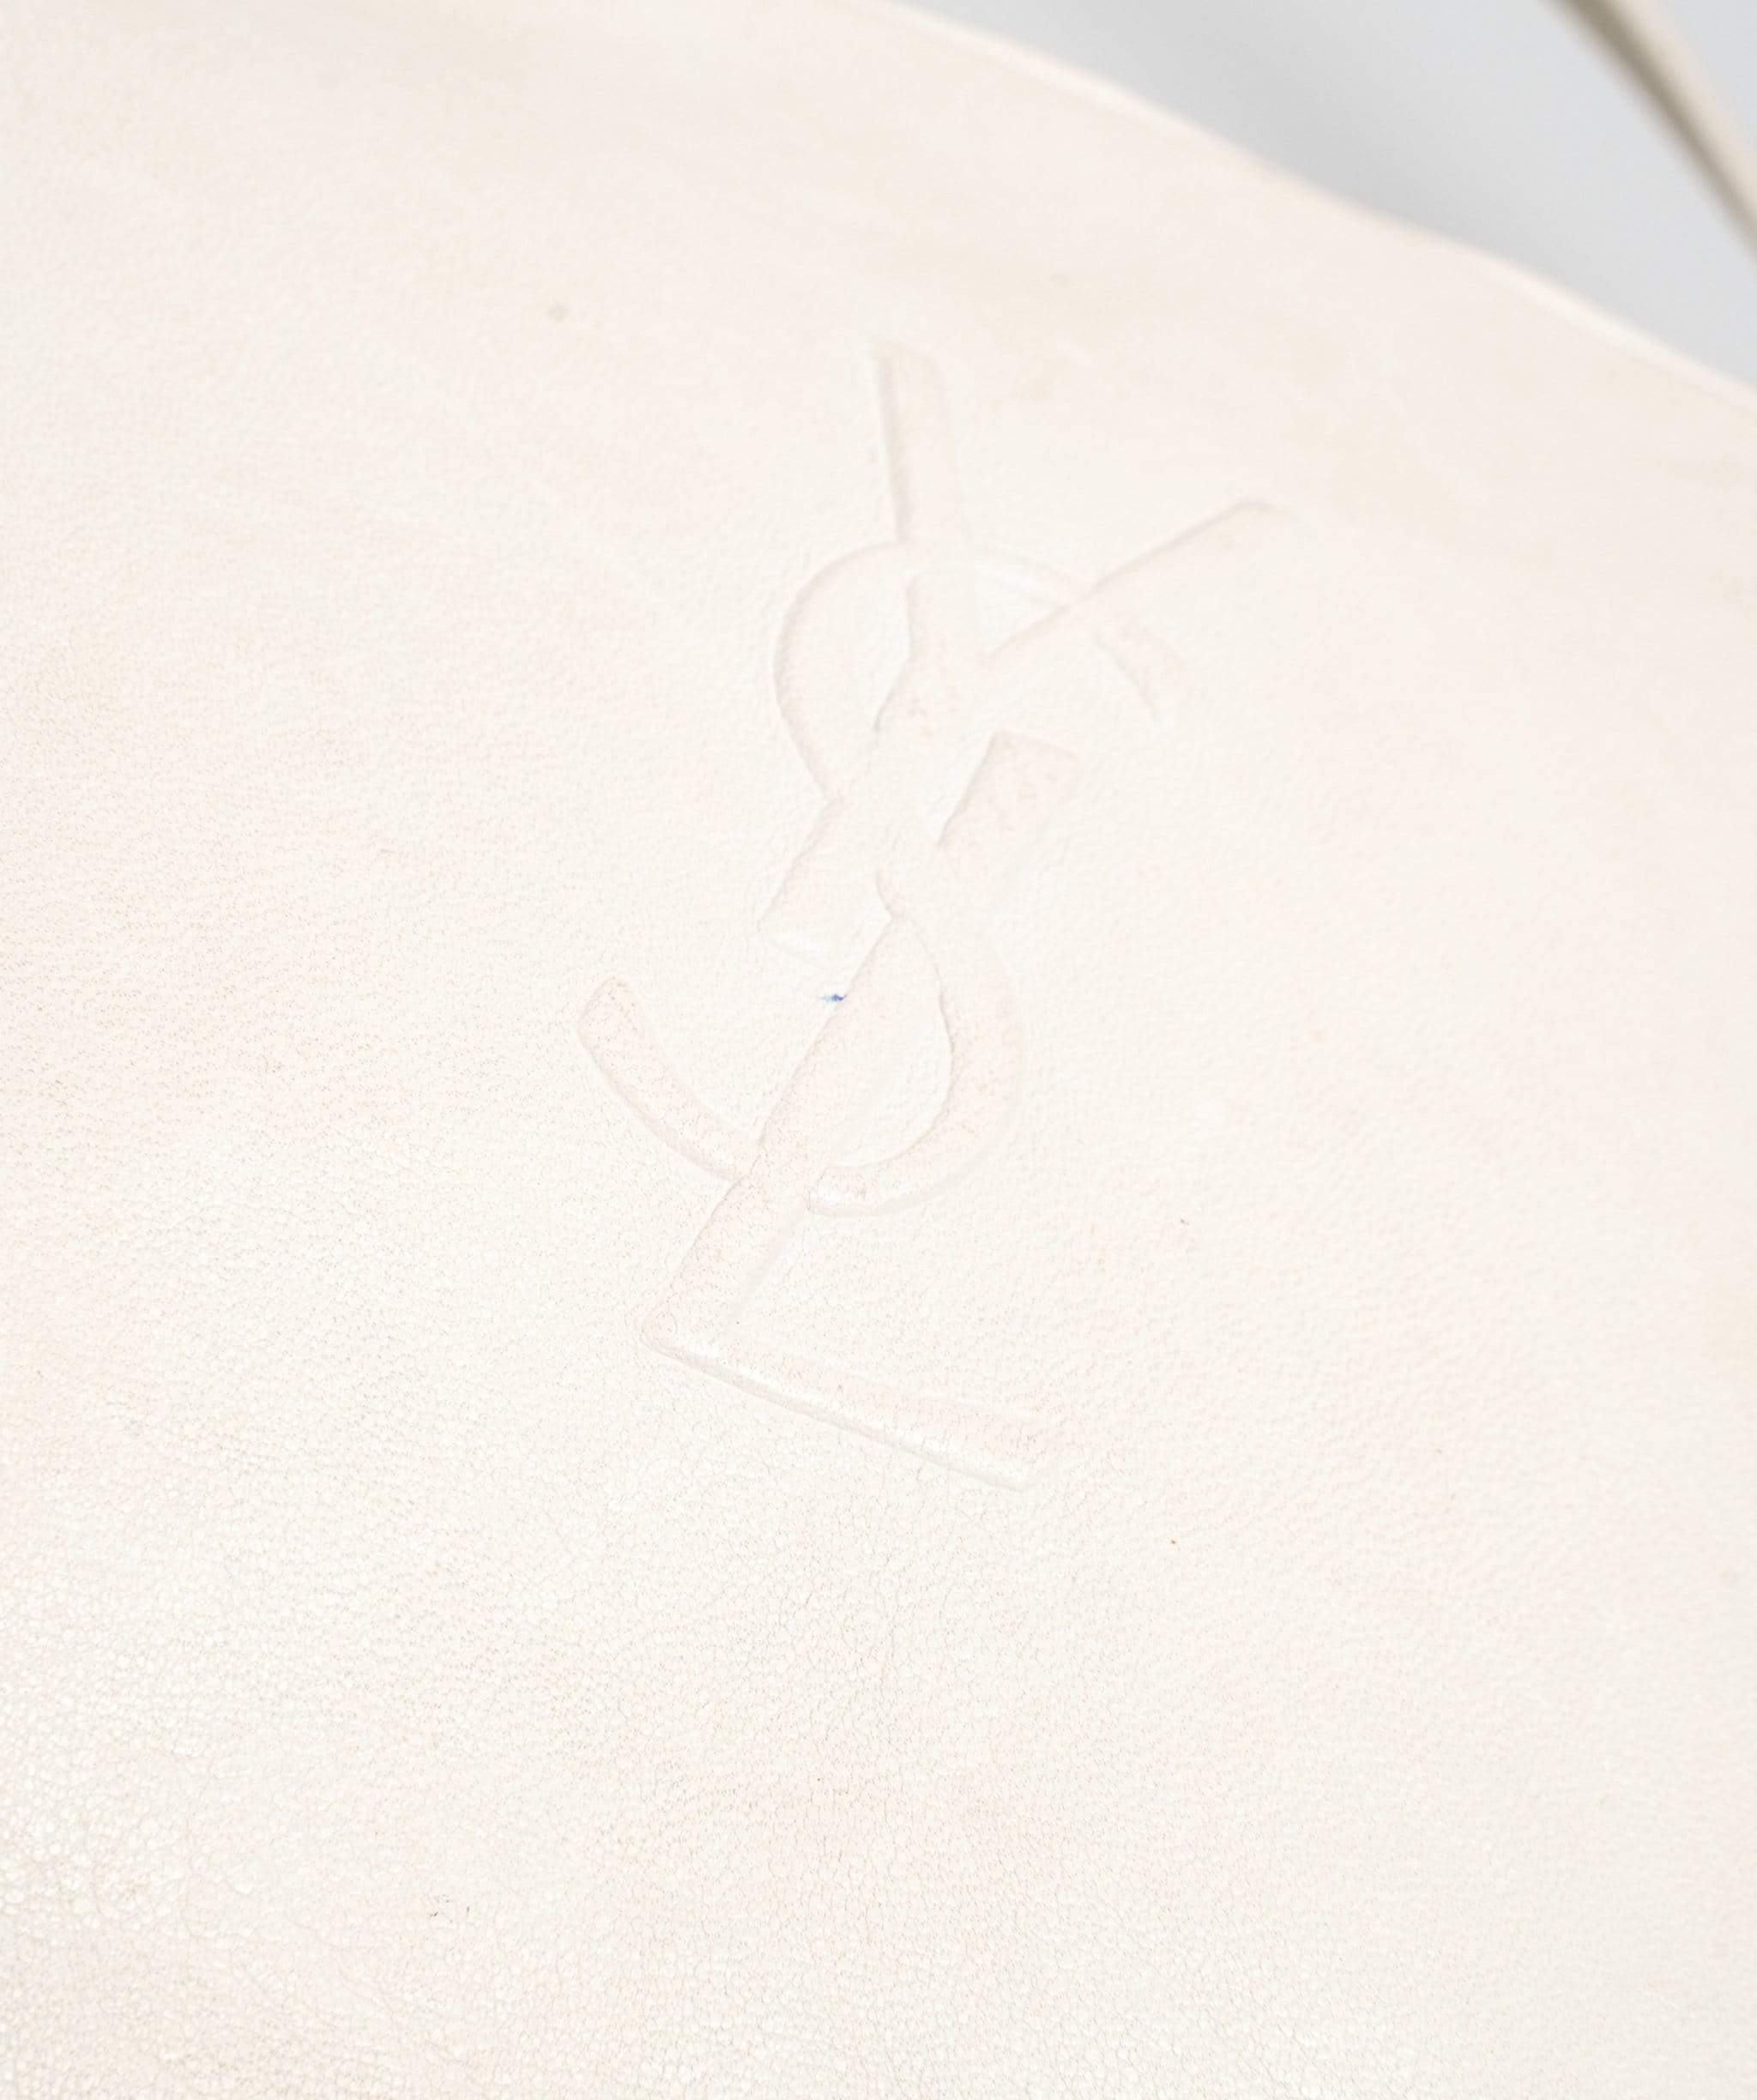 Yves Saint Laurent YSL White Leather Camera Bag - ADL1220